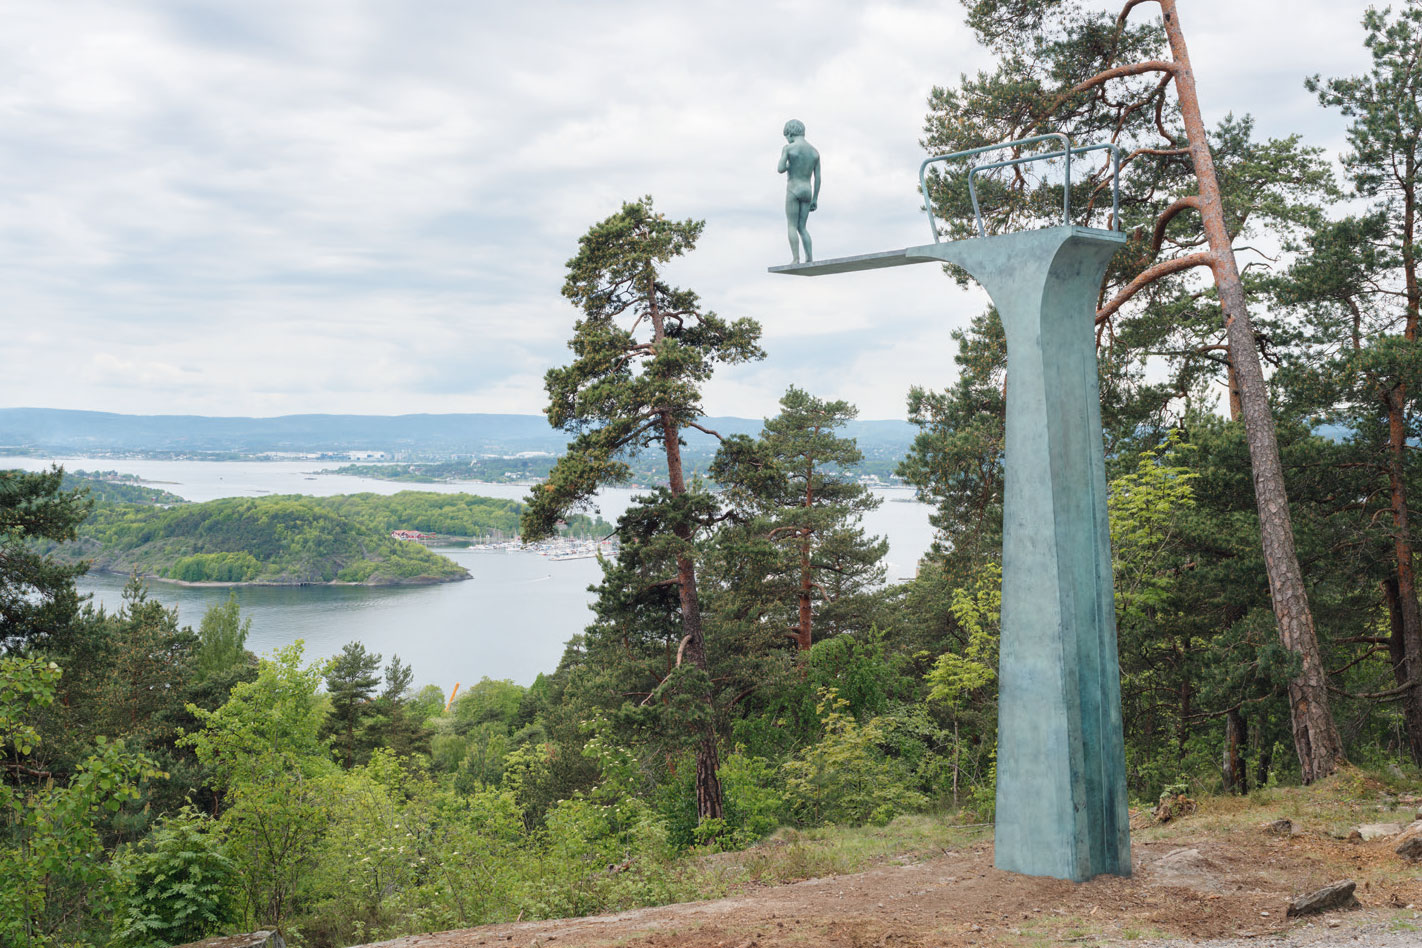 Dilemma, 2017, by Elmgreen & Dragset, Ekebergparken, Oslo, Norway